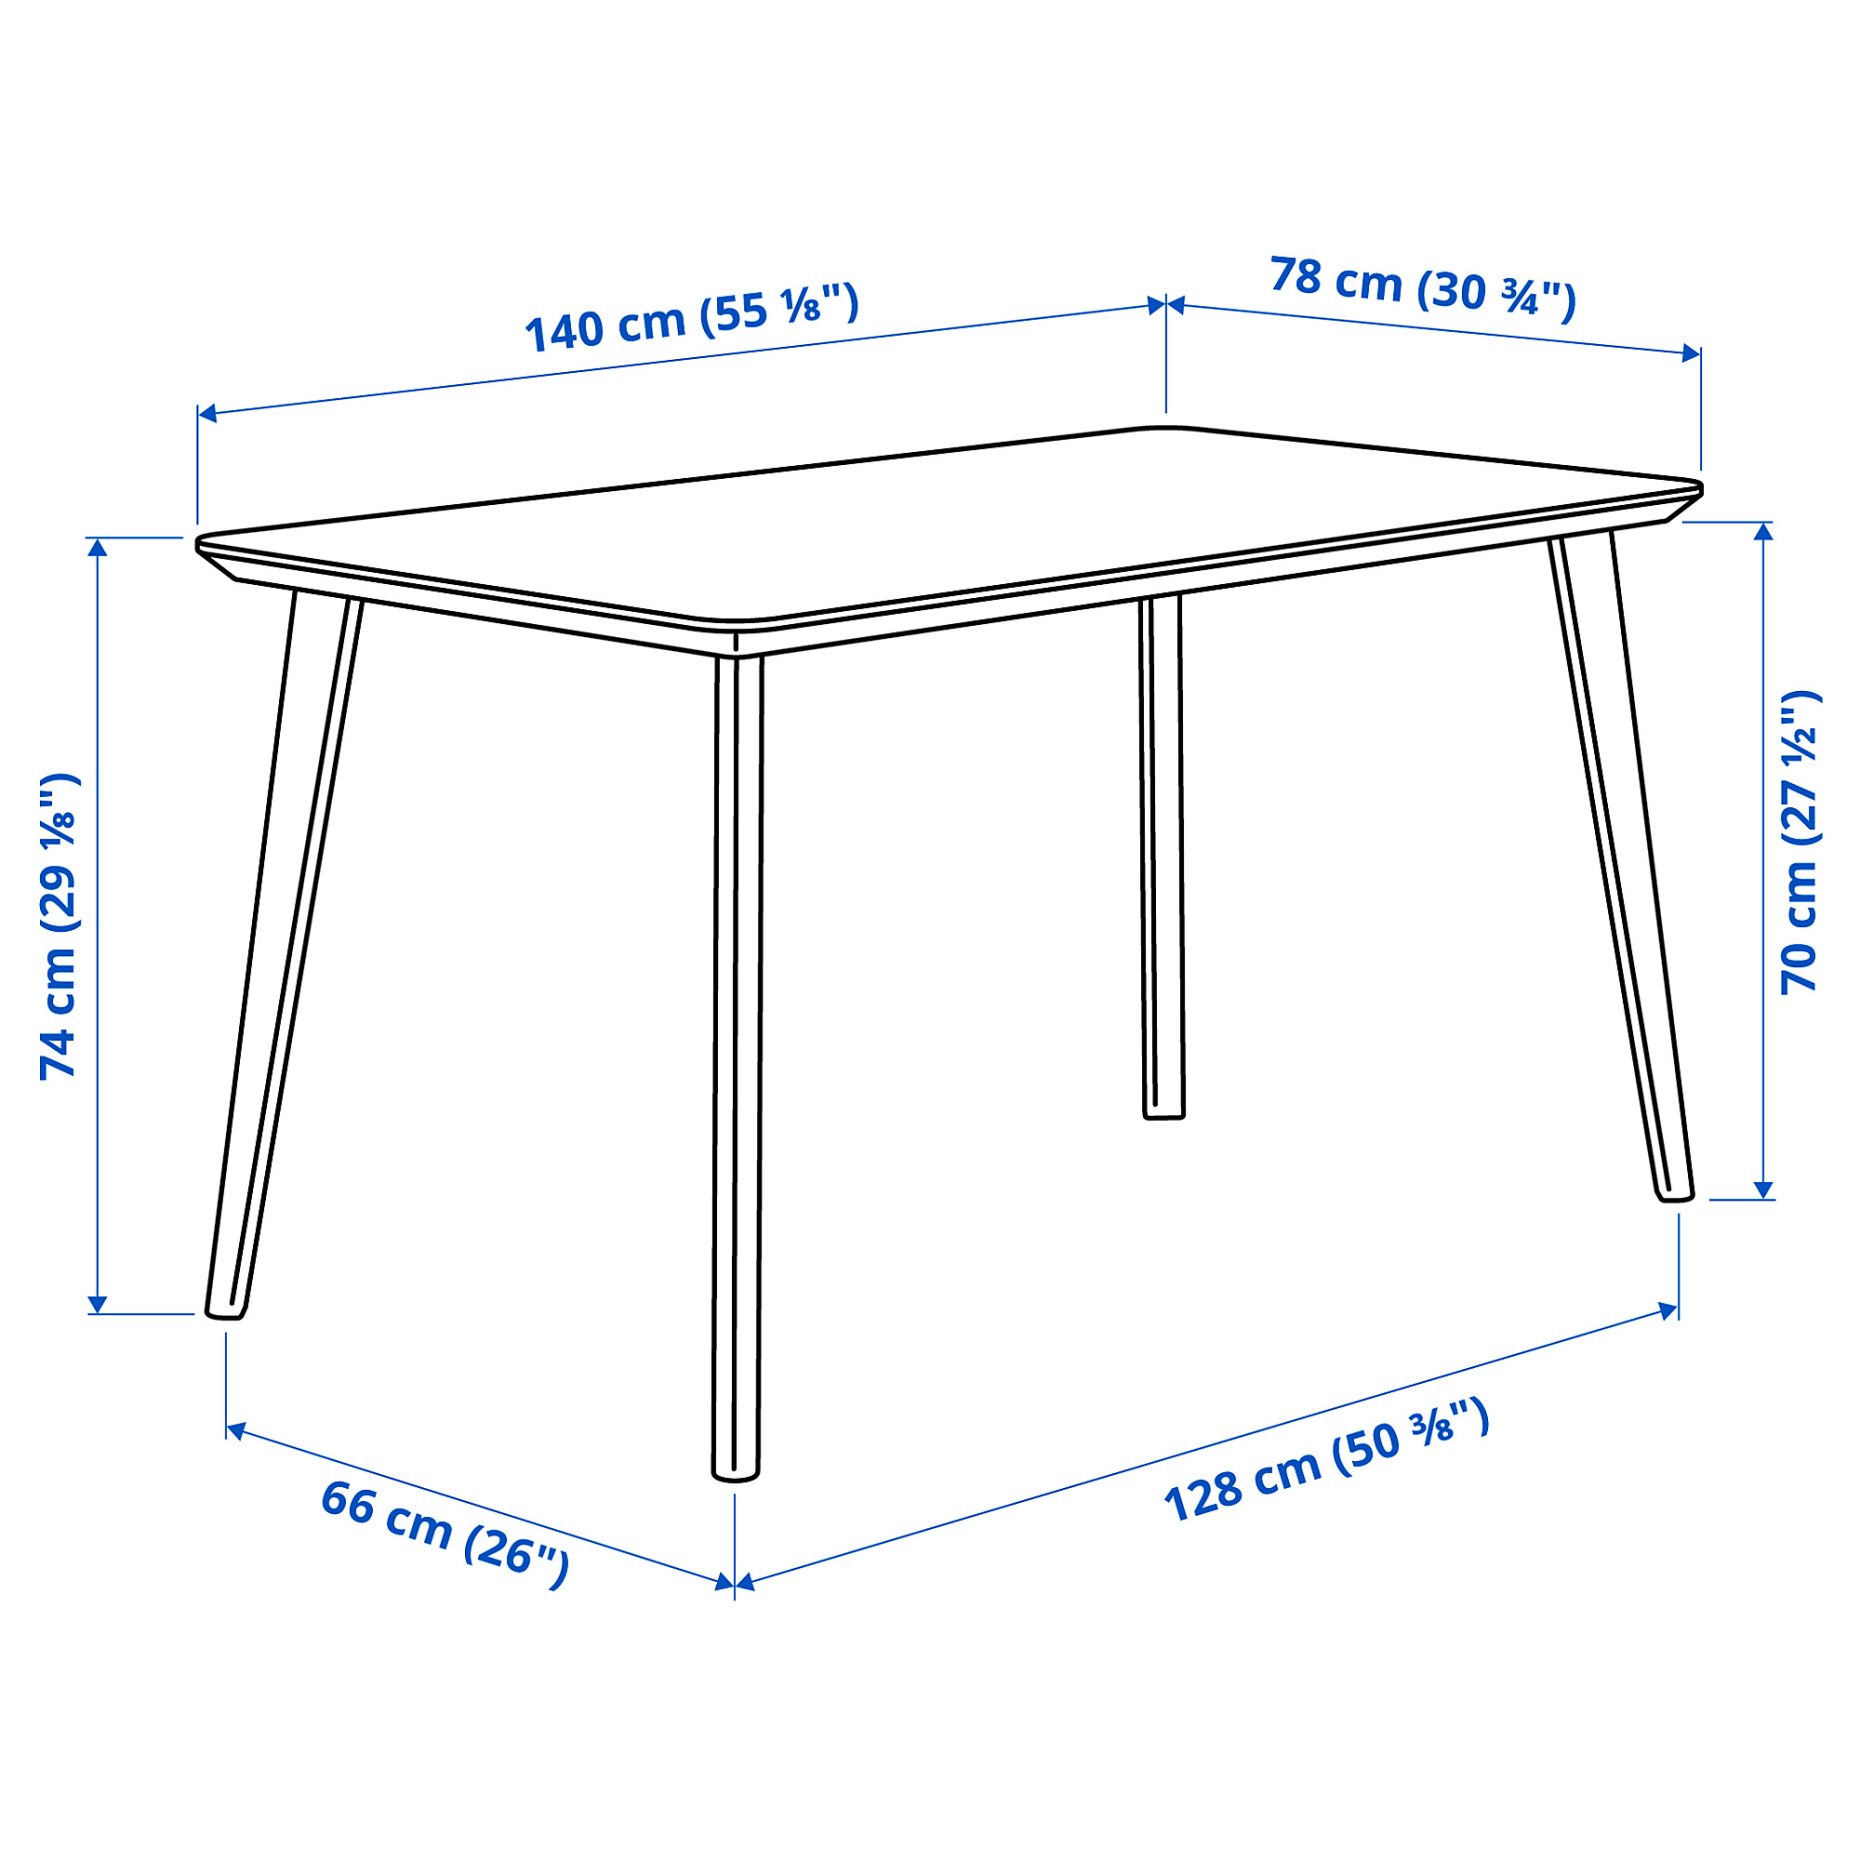 LISABO/IDOLF, table and 4 chairs, 192.521.87